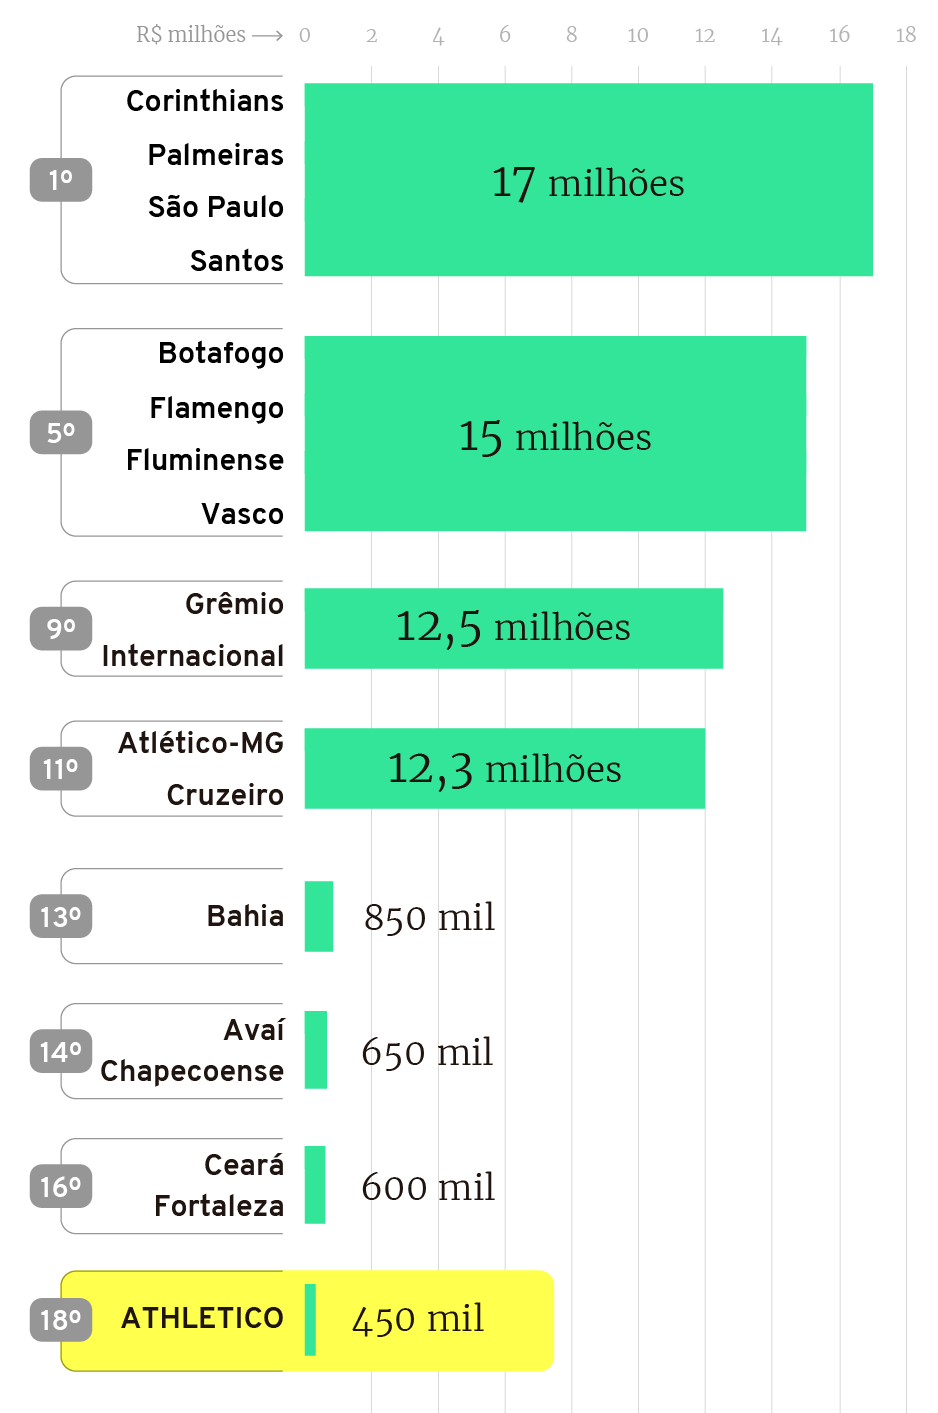 Infográfico: Cotas de televisão nos estaduais dos principais clubes do Brasil em 2019